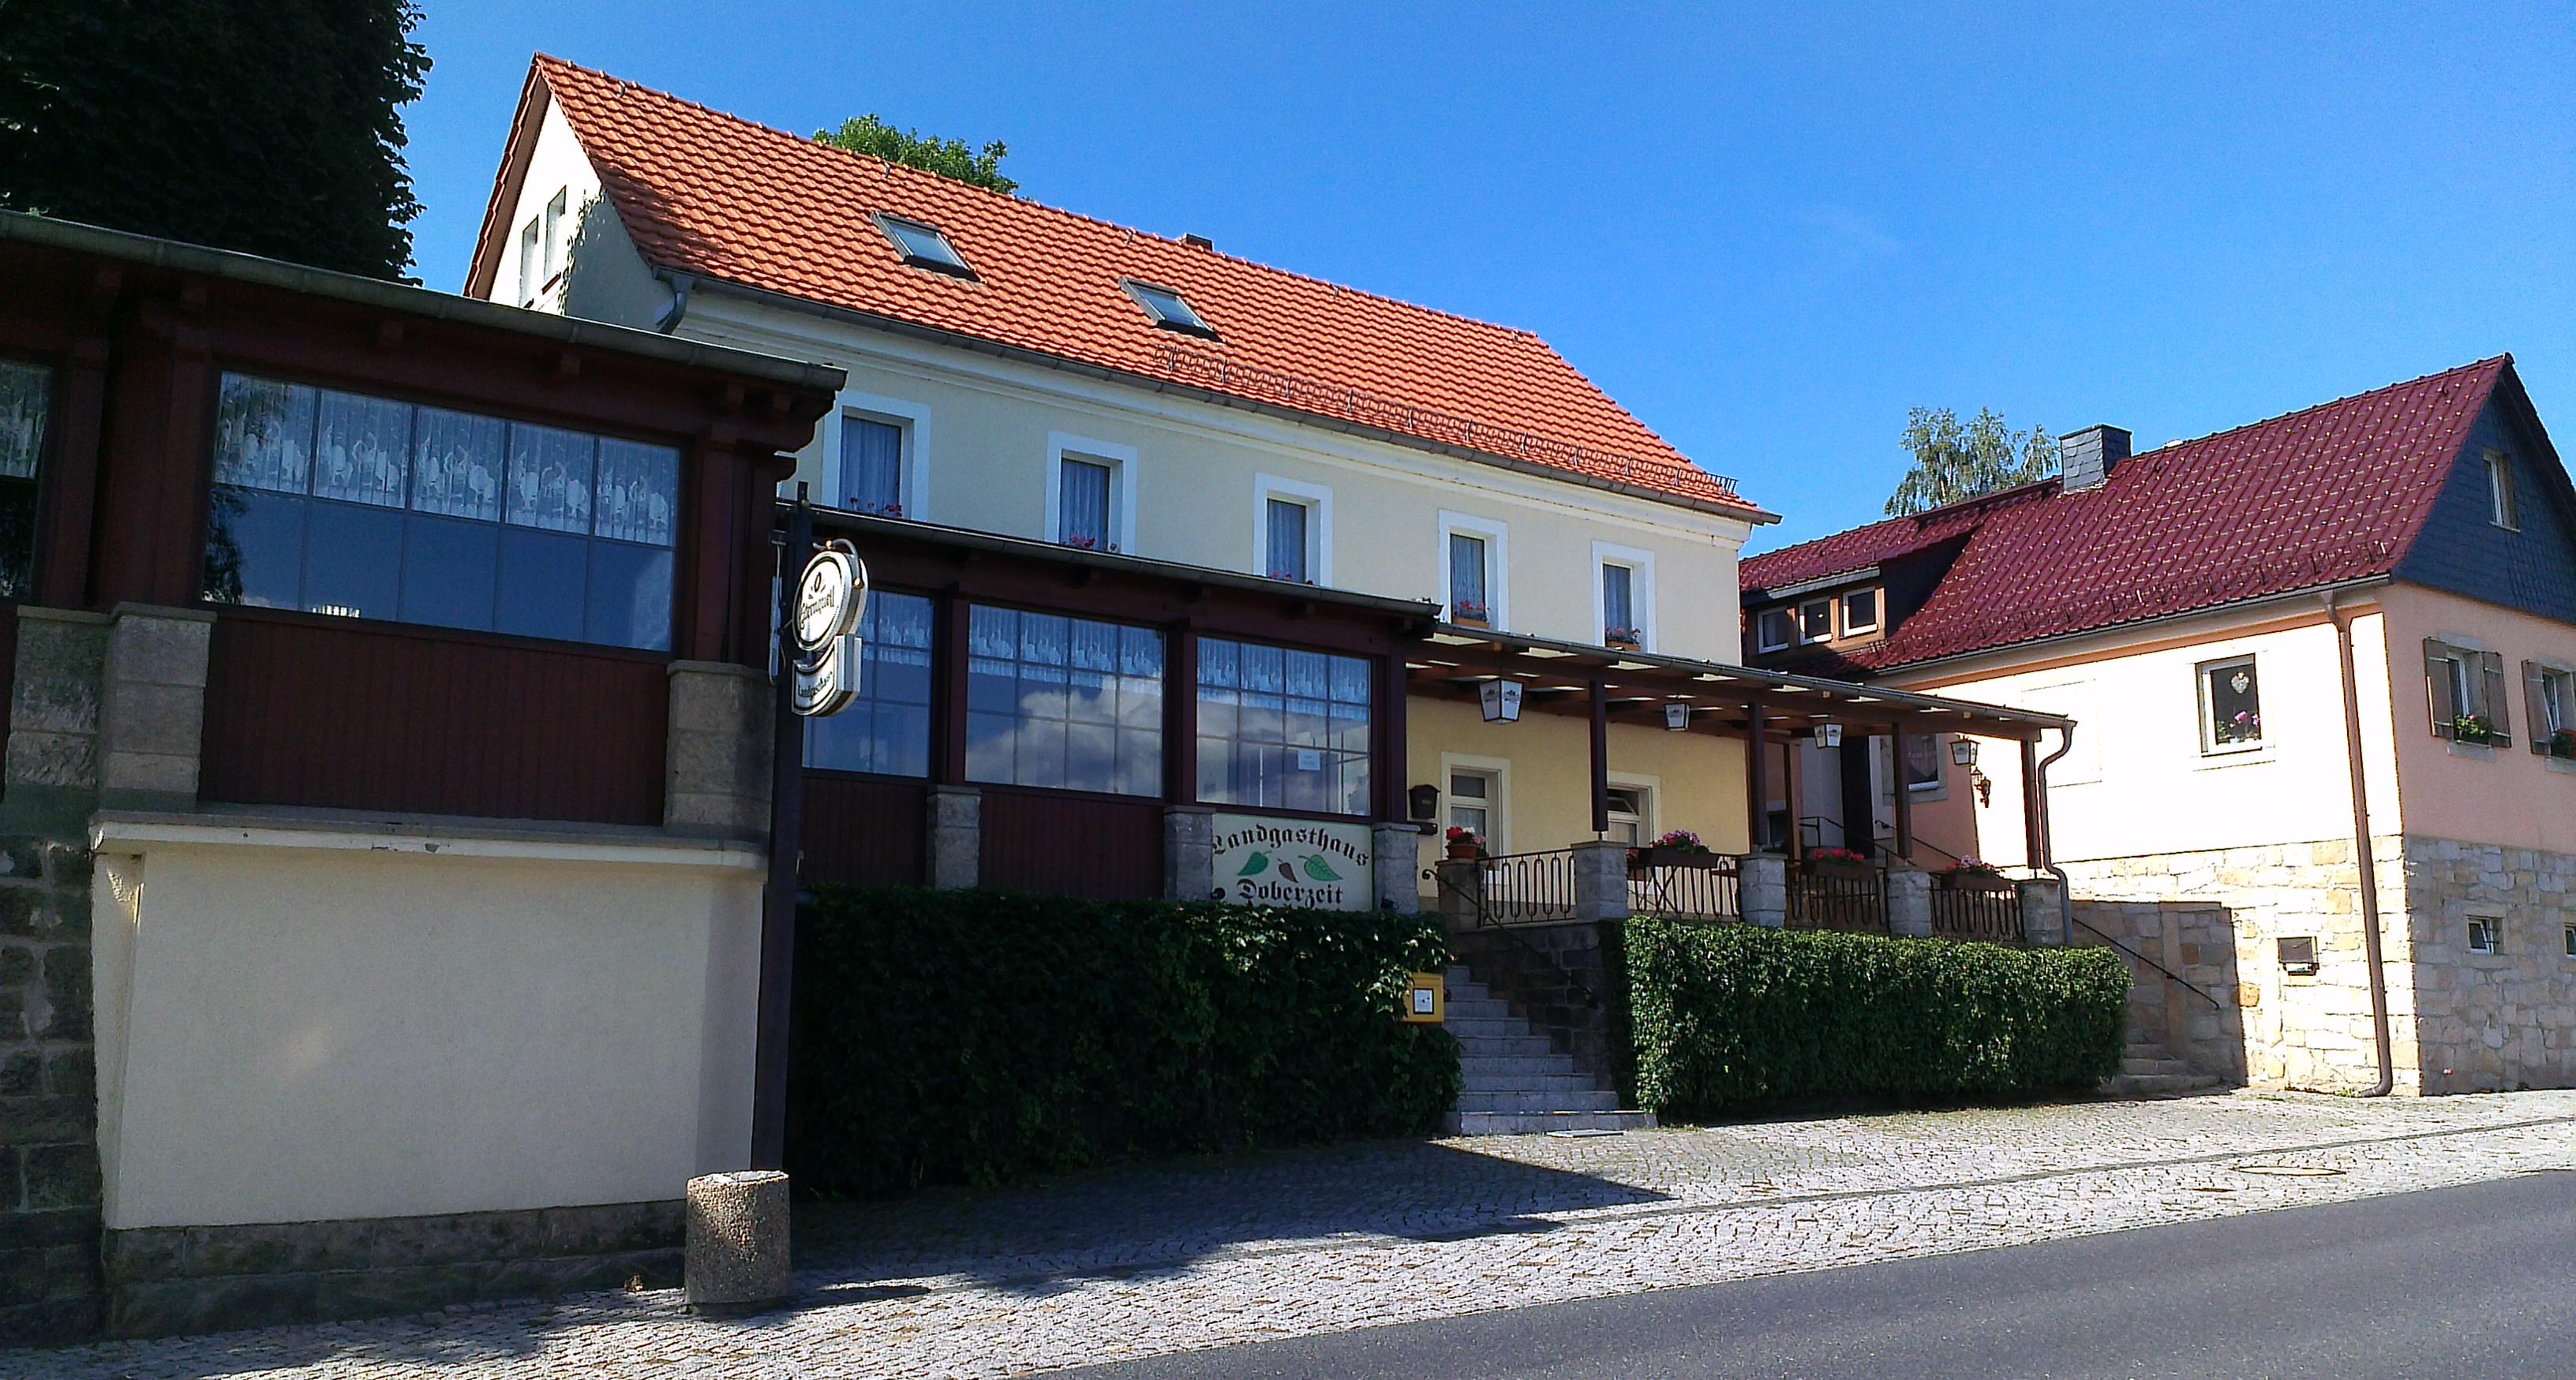 Bild 1 Landgasthaus Doberzeit in Lohmen